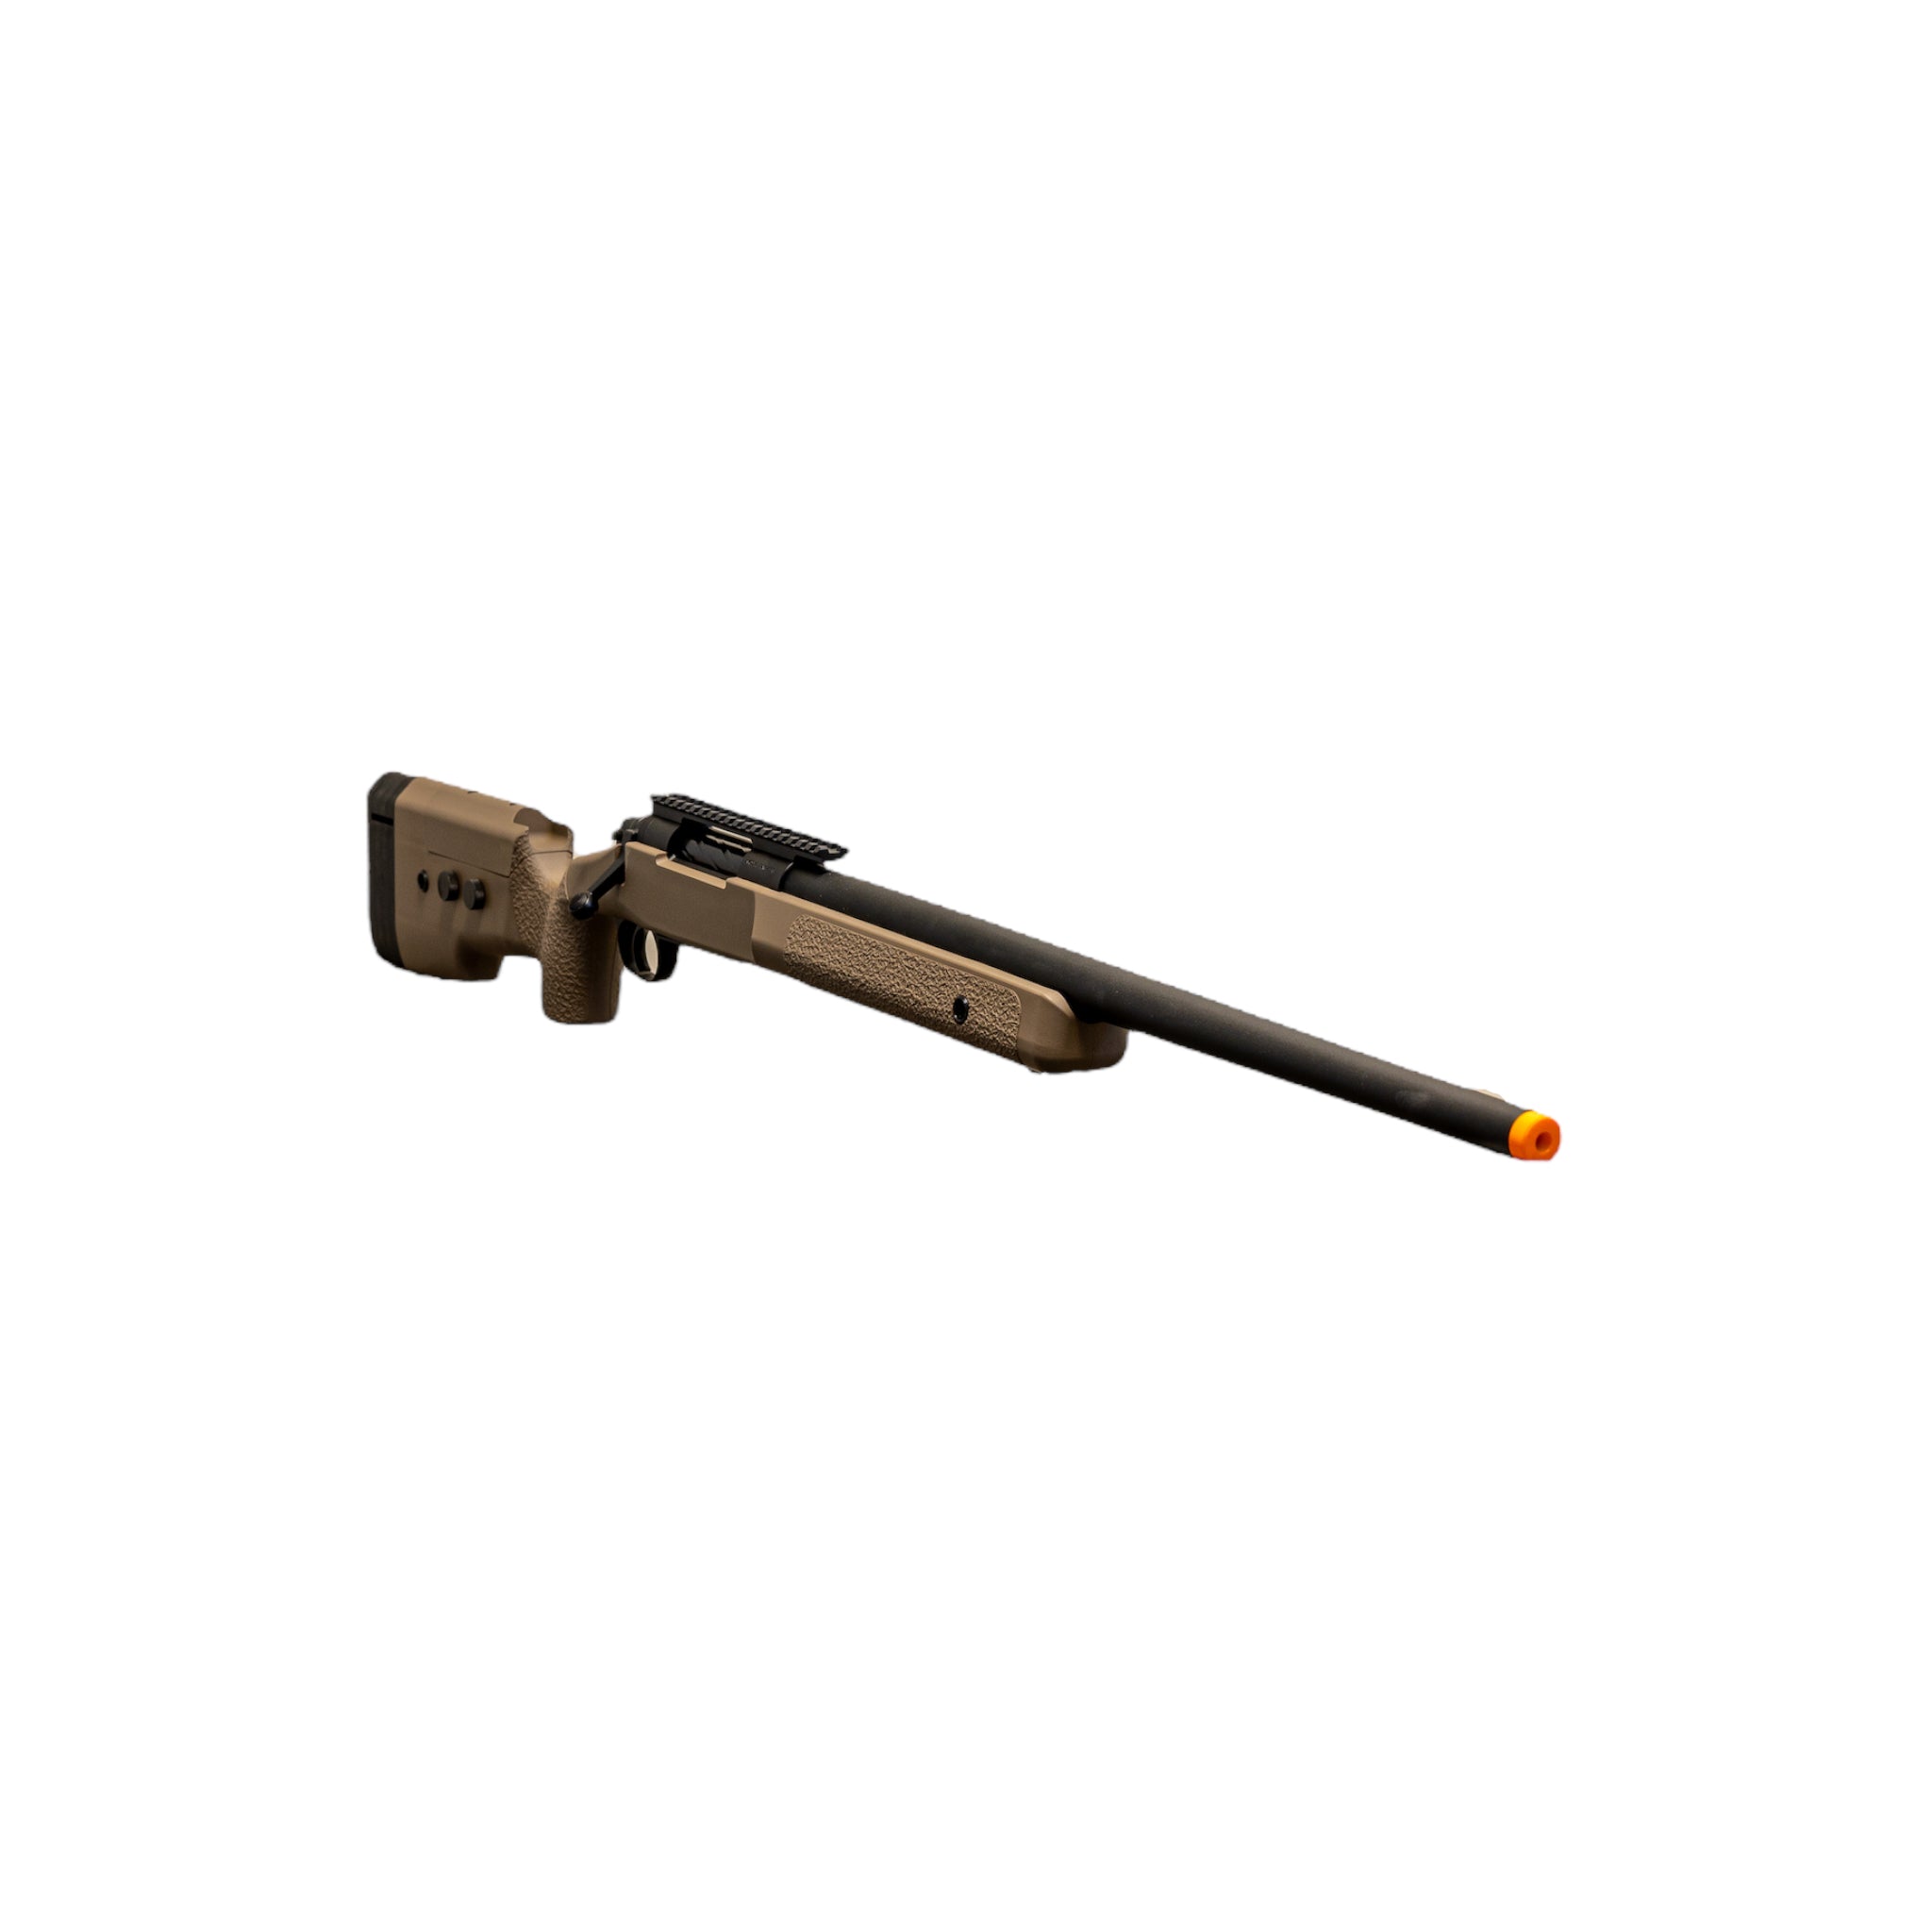 Novritsch TAC338 – Limited Edition Sniper Rifle M150 - ssairsoft.com